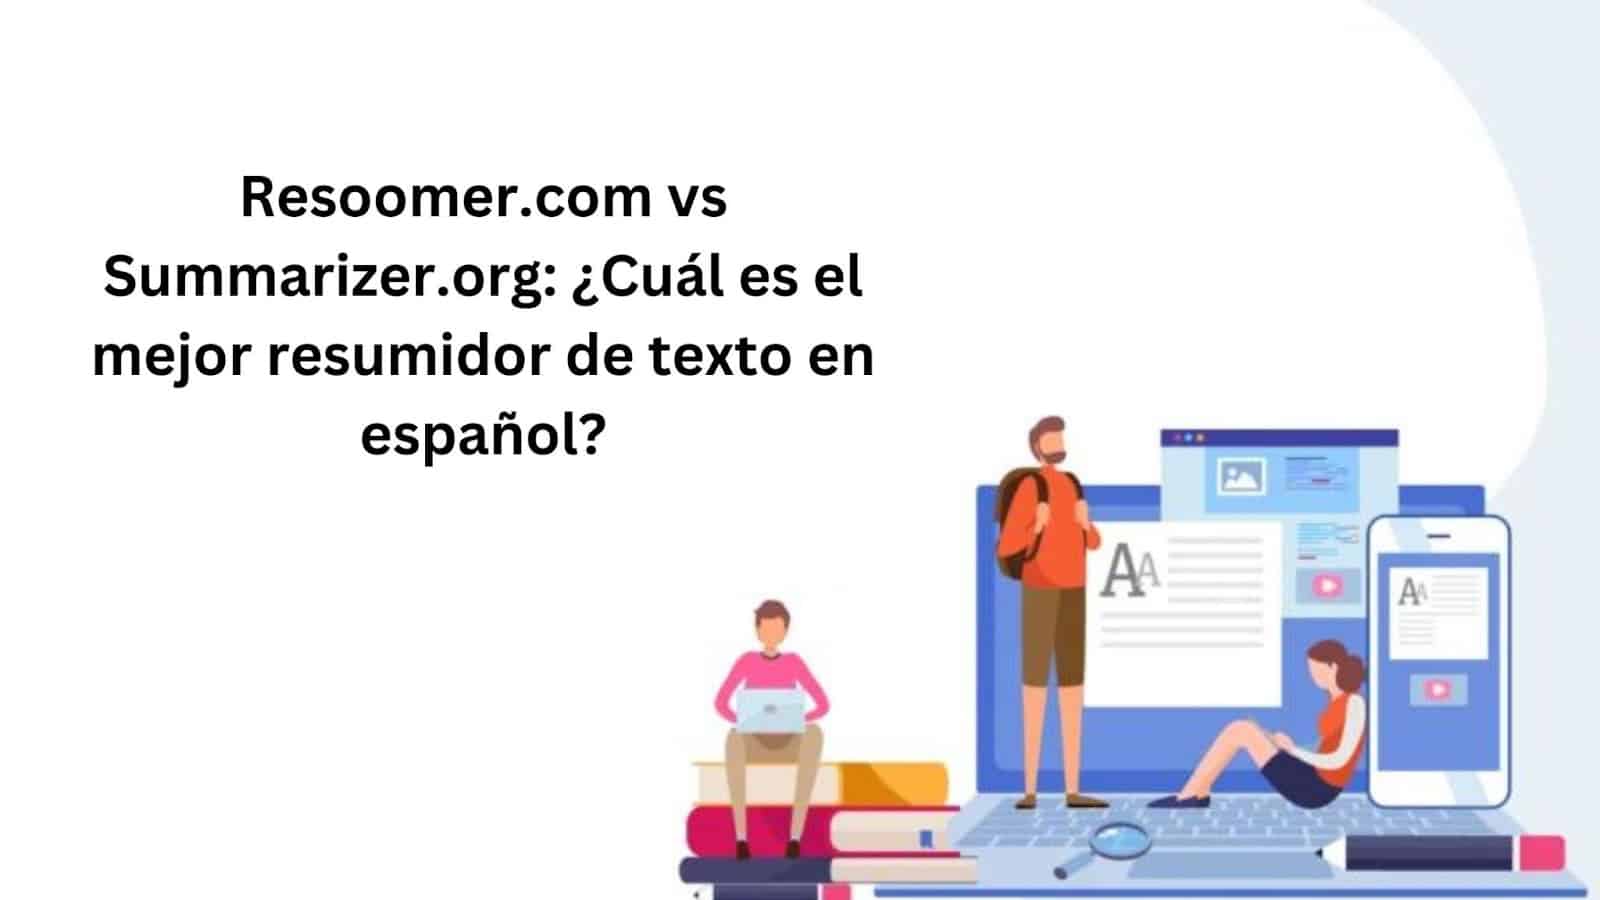 Resoomer.com vs Summarizer.org